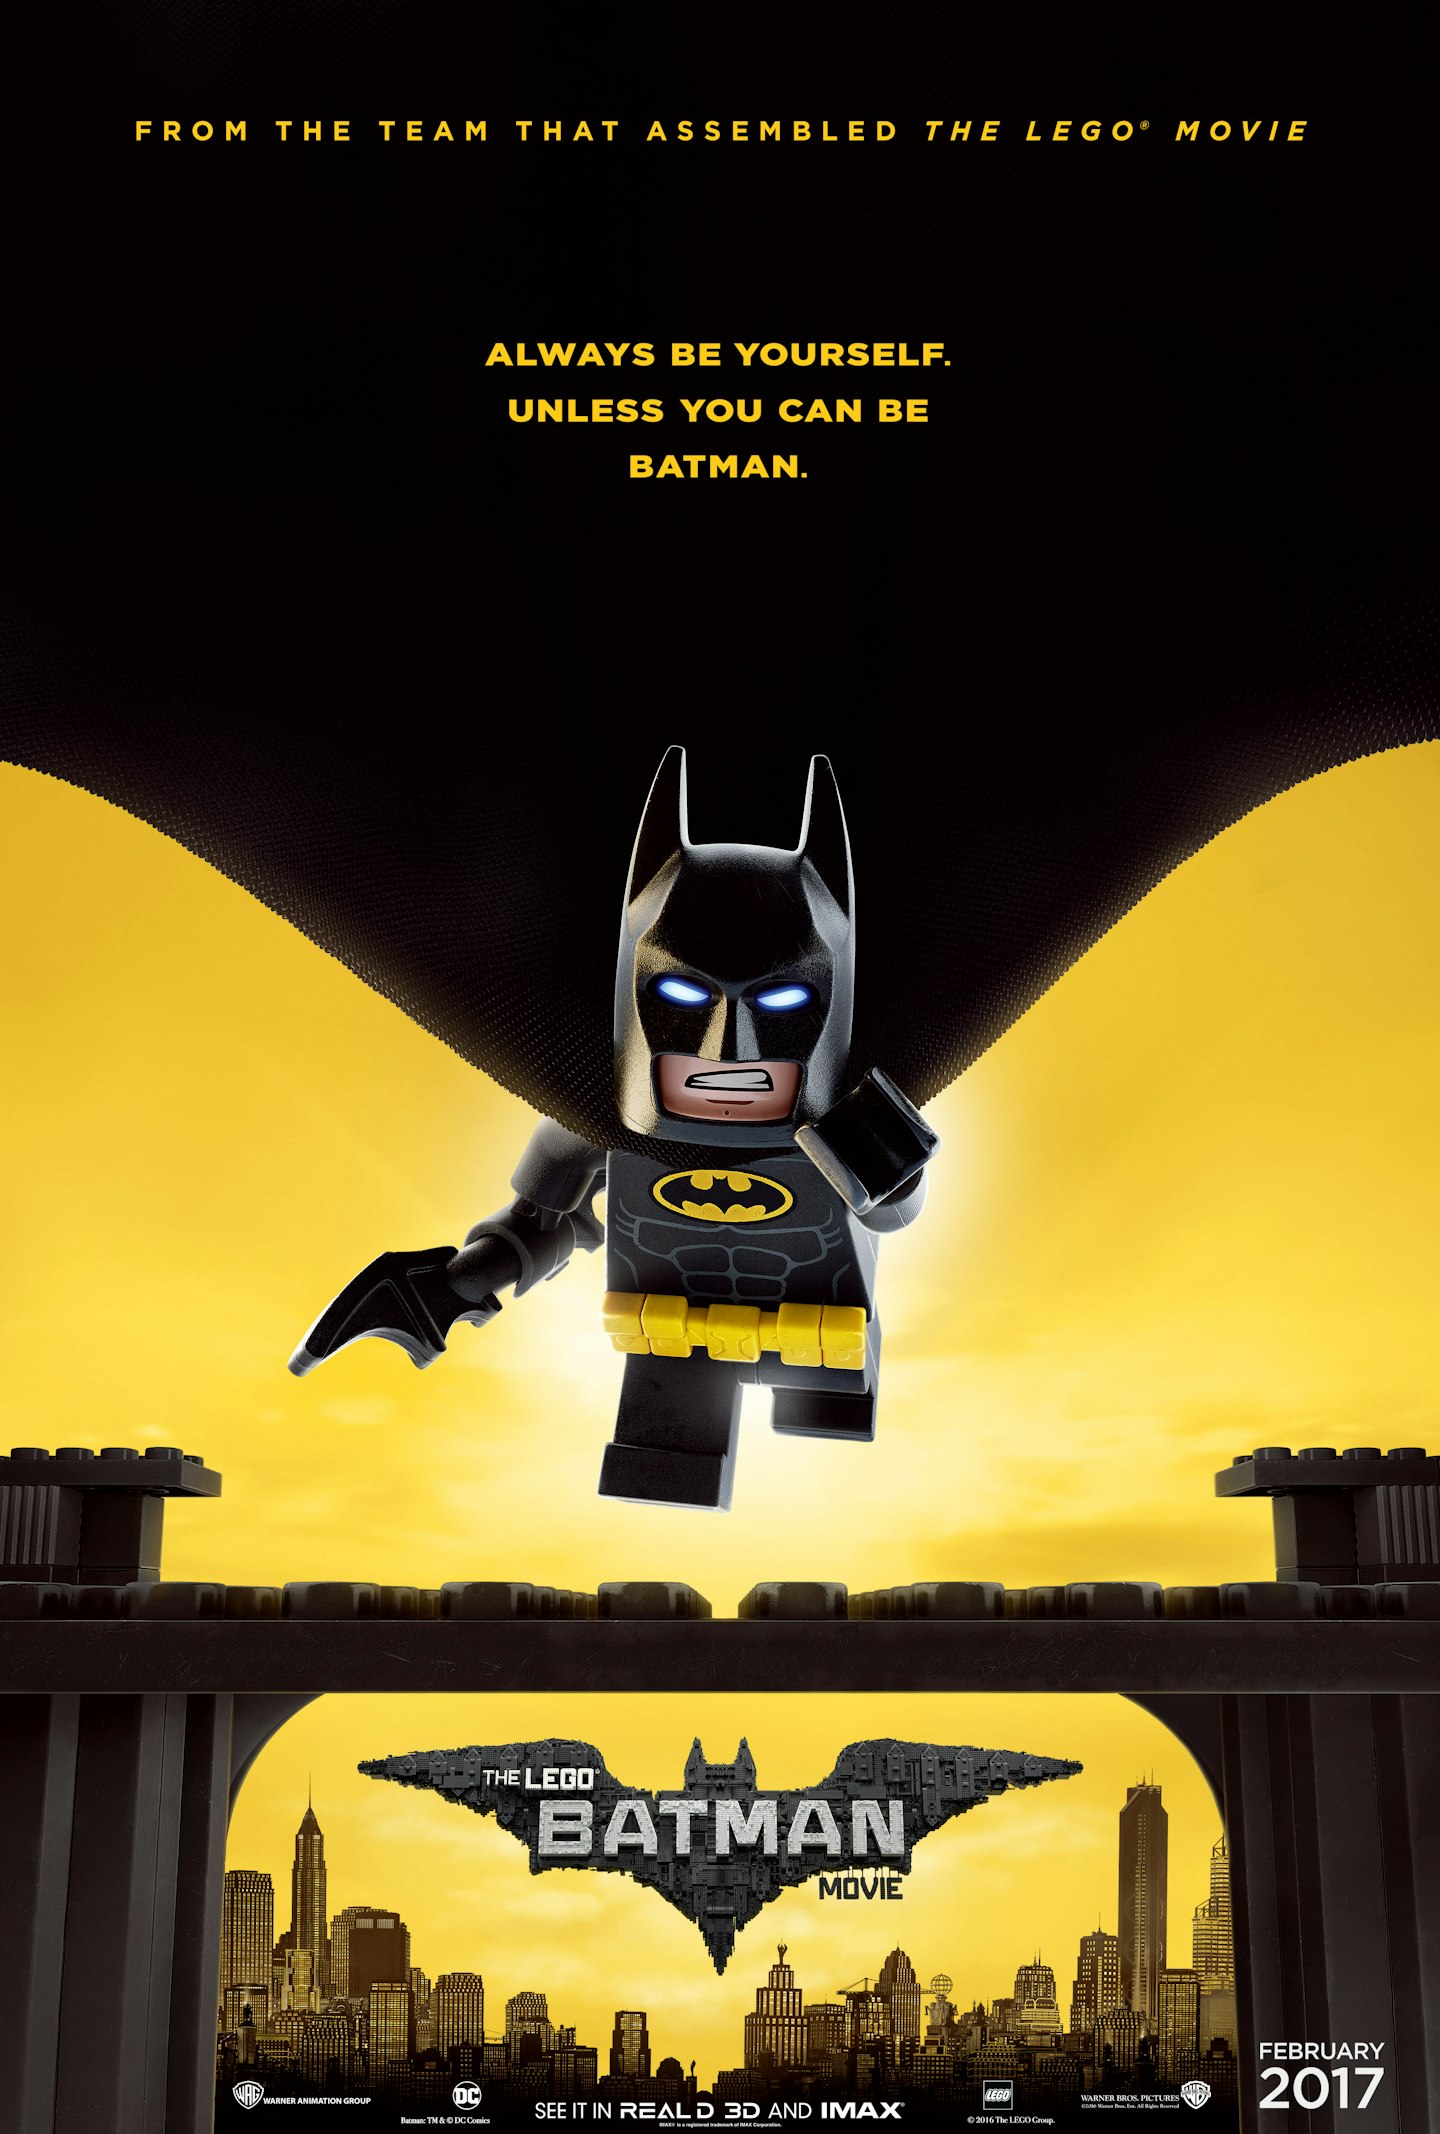 Lego Batman Sep 2016 poster